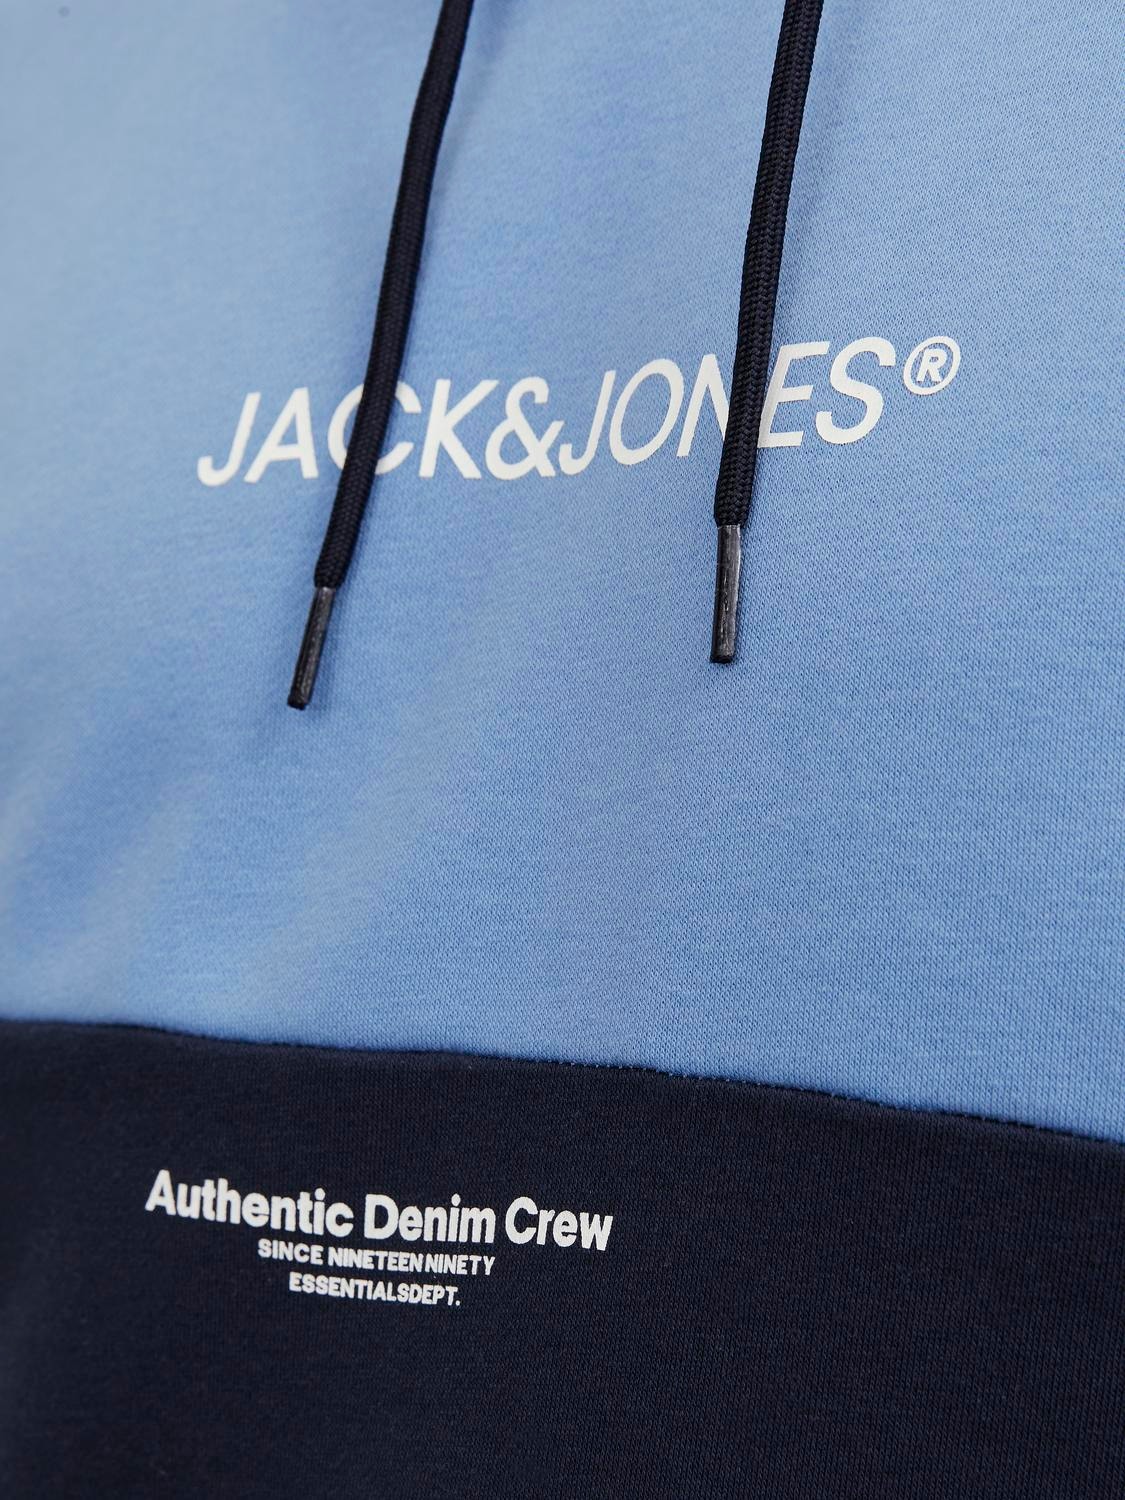 Jack & Jones - Sweat à capuche et logo - Bleu